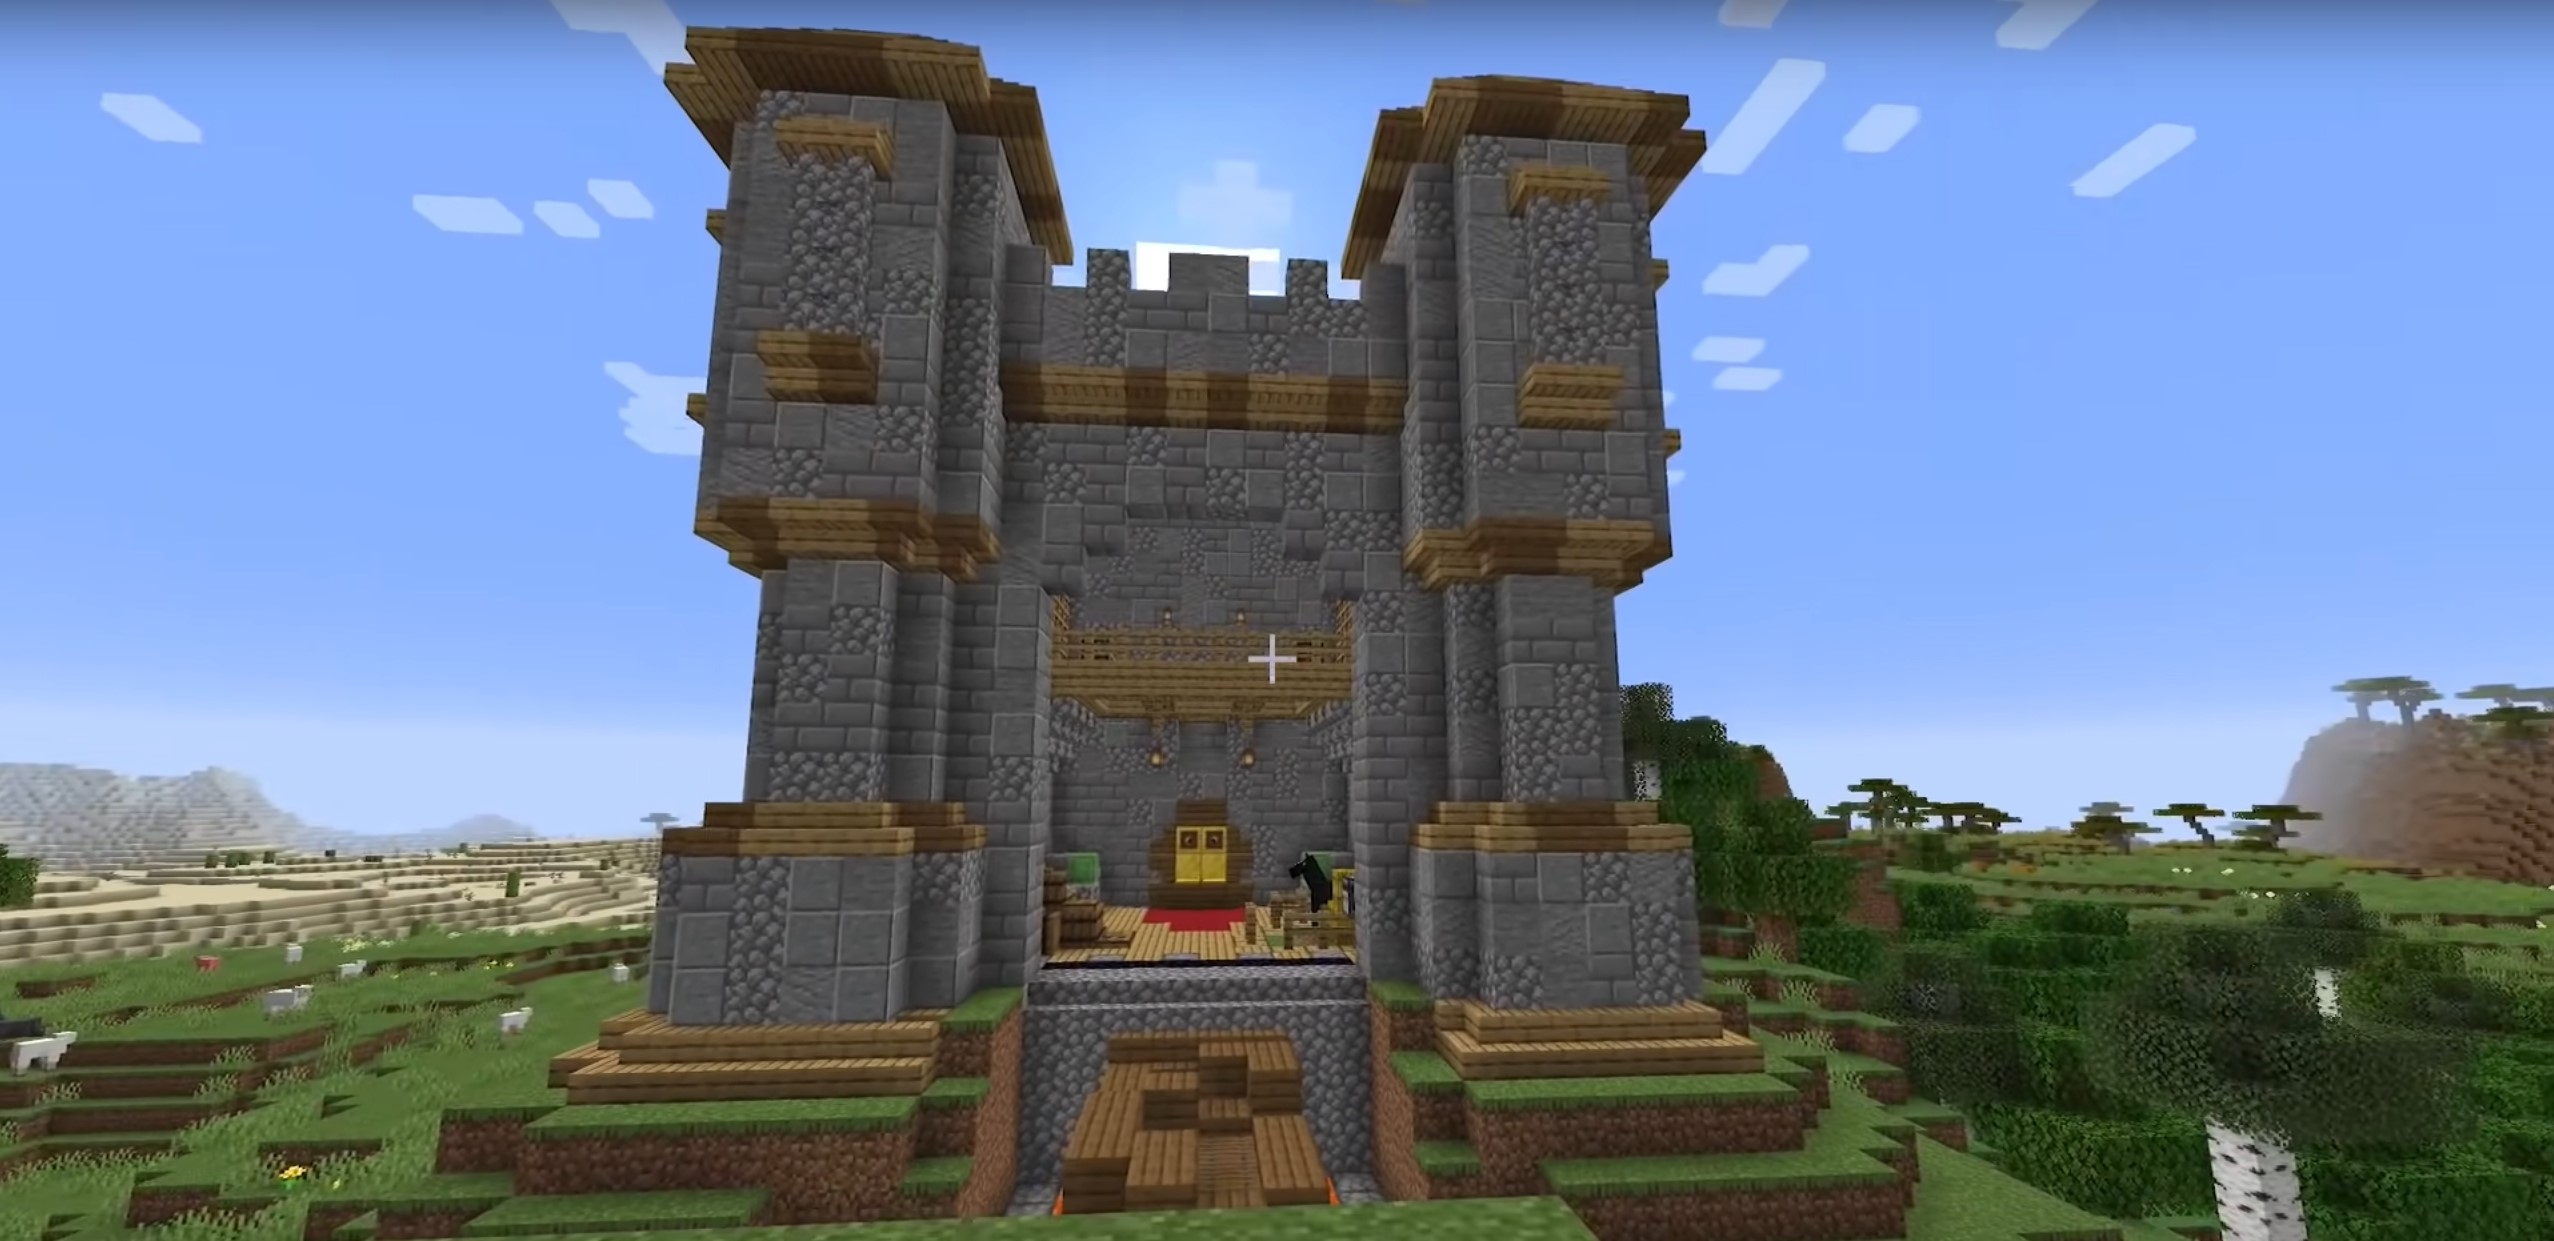 Minecraft Massive Redstone Piston castle idea